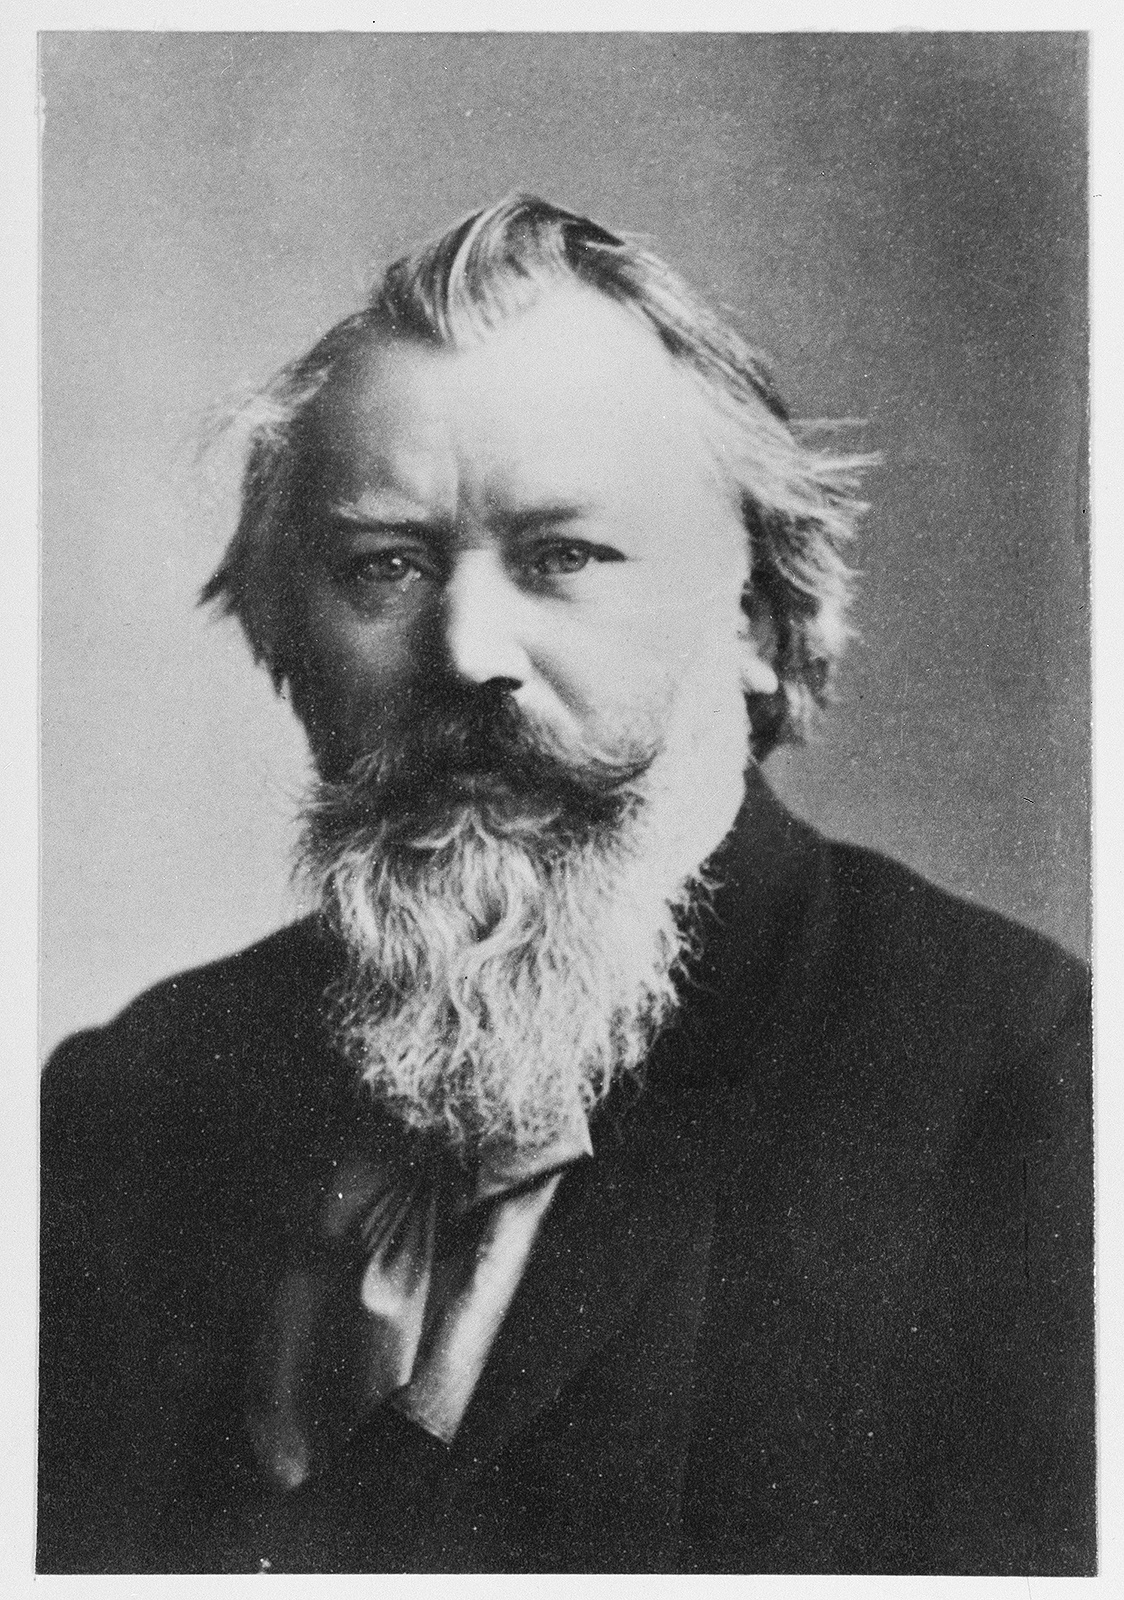 Porträt-Foto von Johannes Brahms in schwarz-weiß.